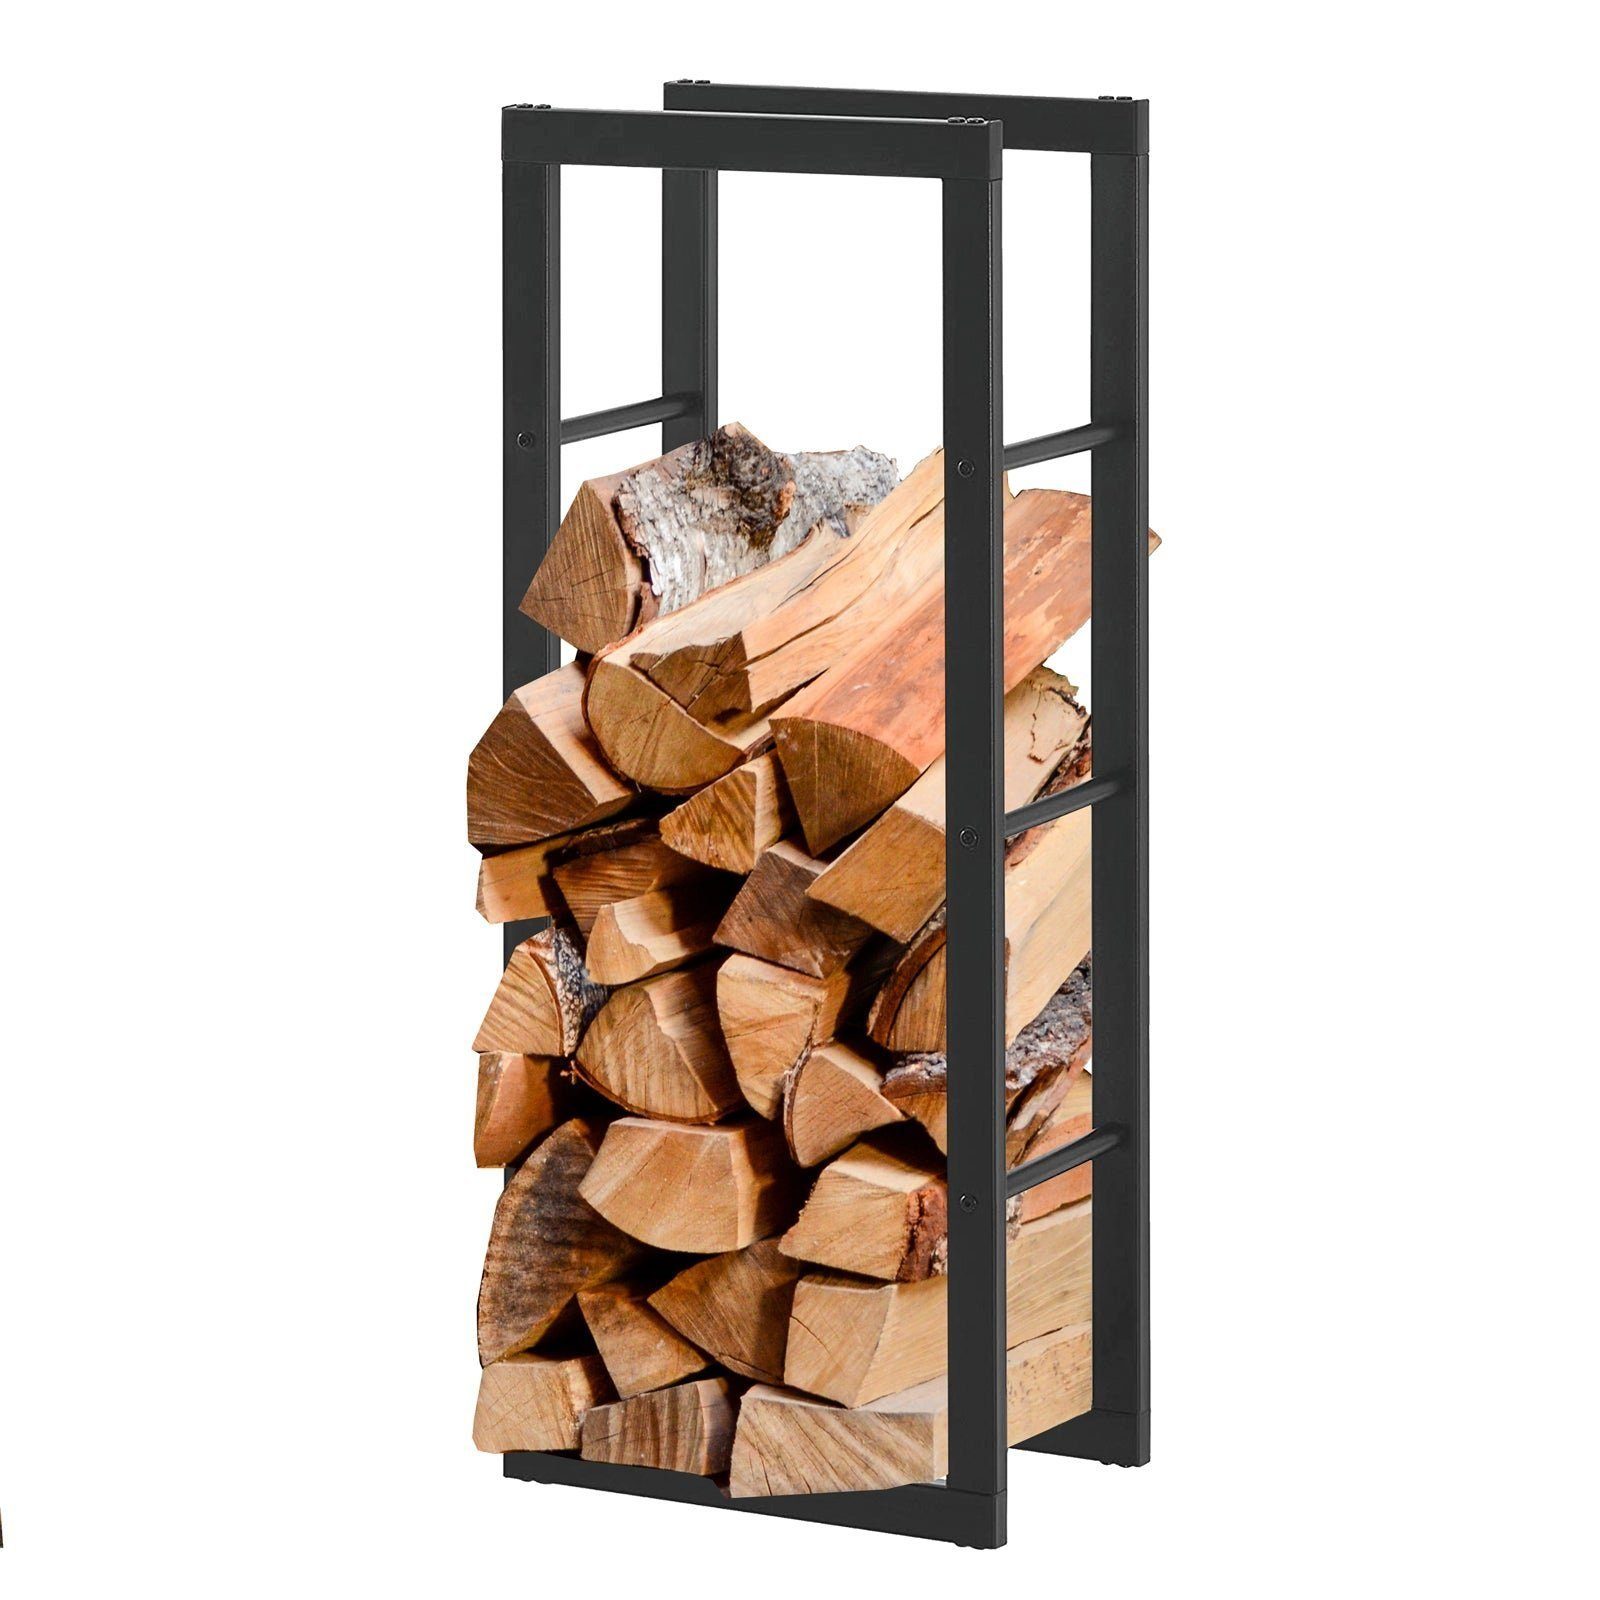 Karat Kaminholzregal Erhältlich in 3 Größen, Holzregal, Holzvorrat, BxTxH:40x25x150 cm, Für den Innen- und Außenbereich geeignet